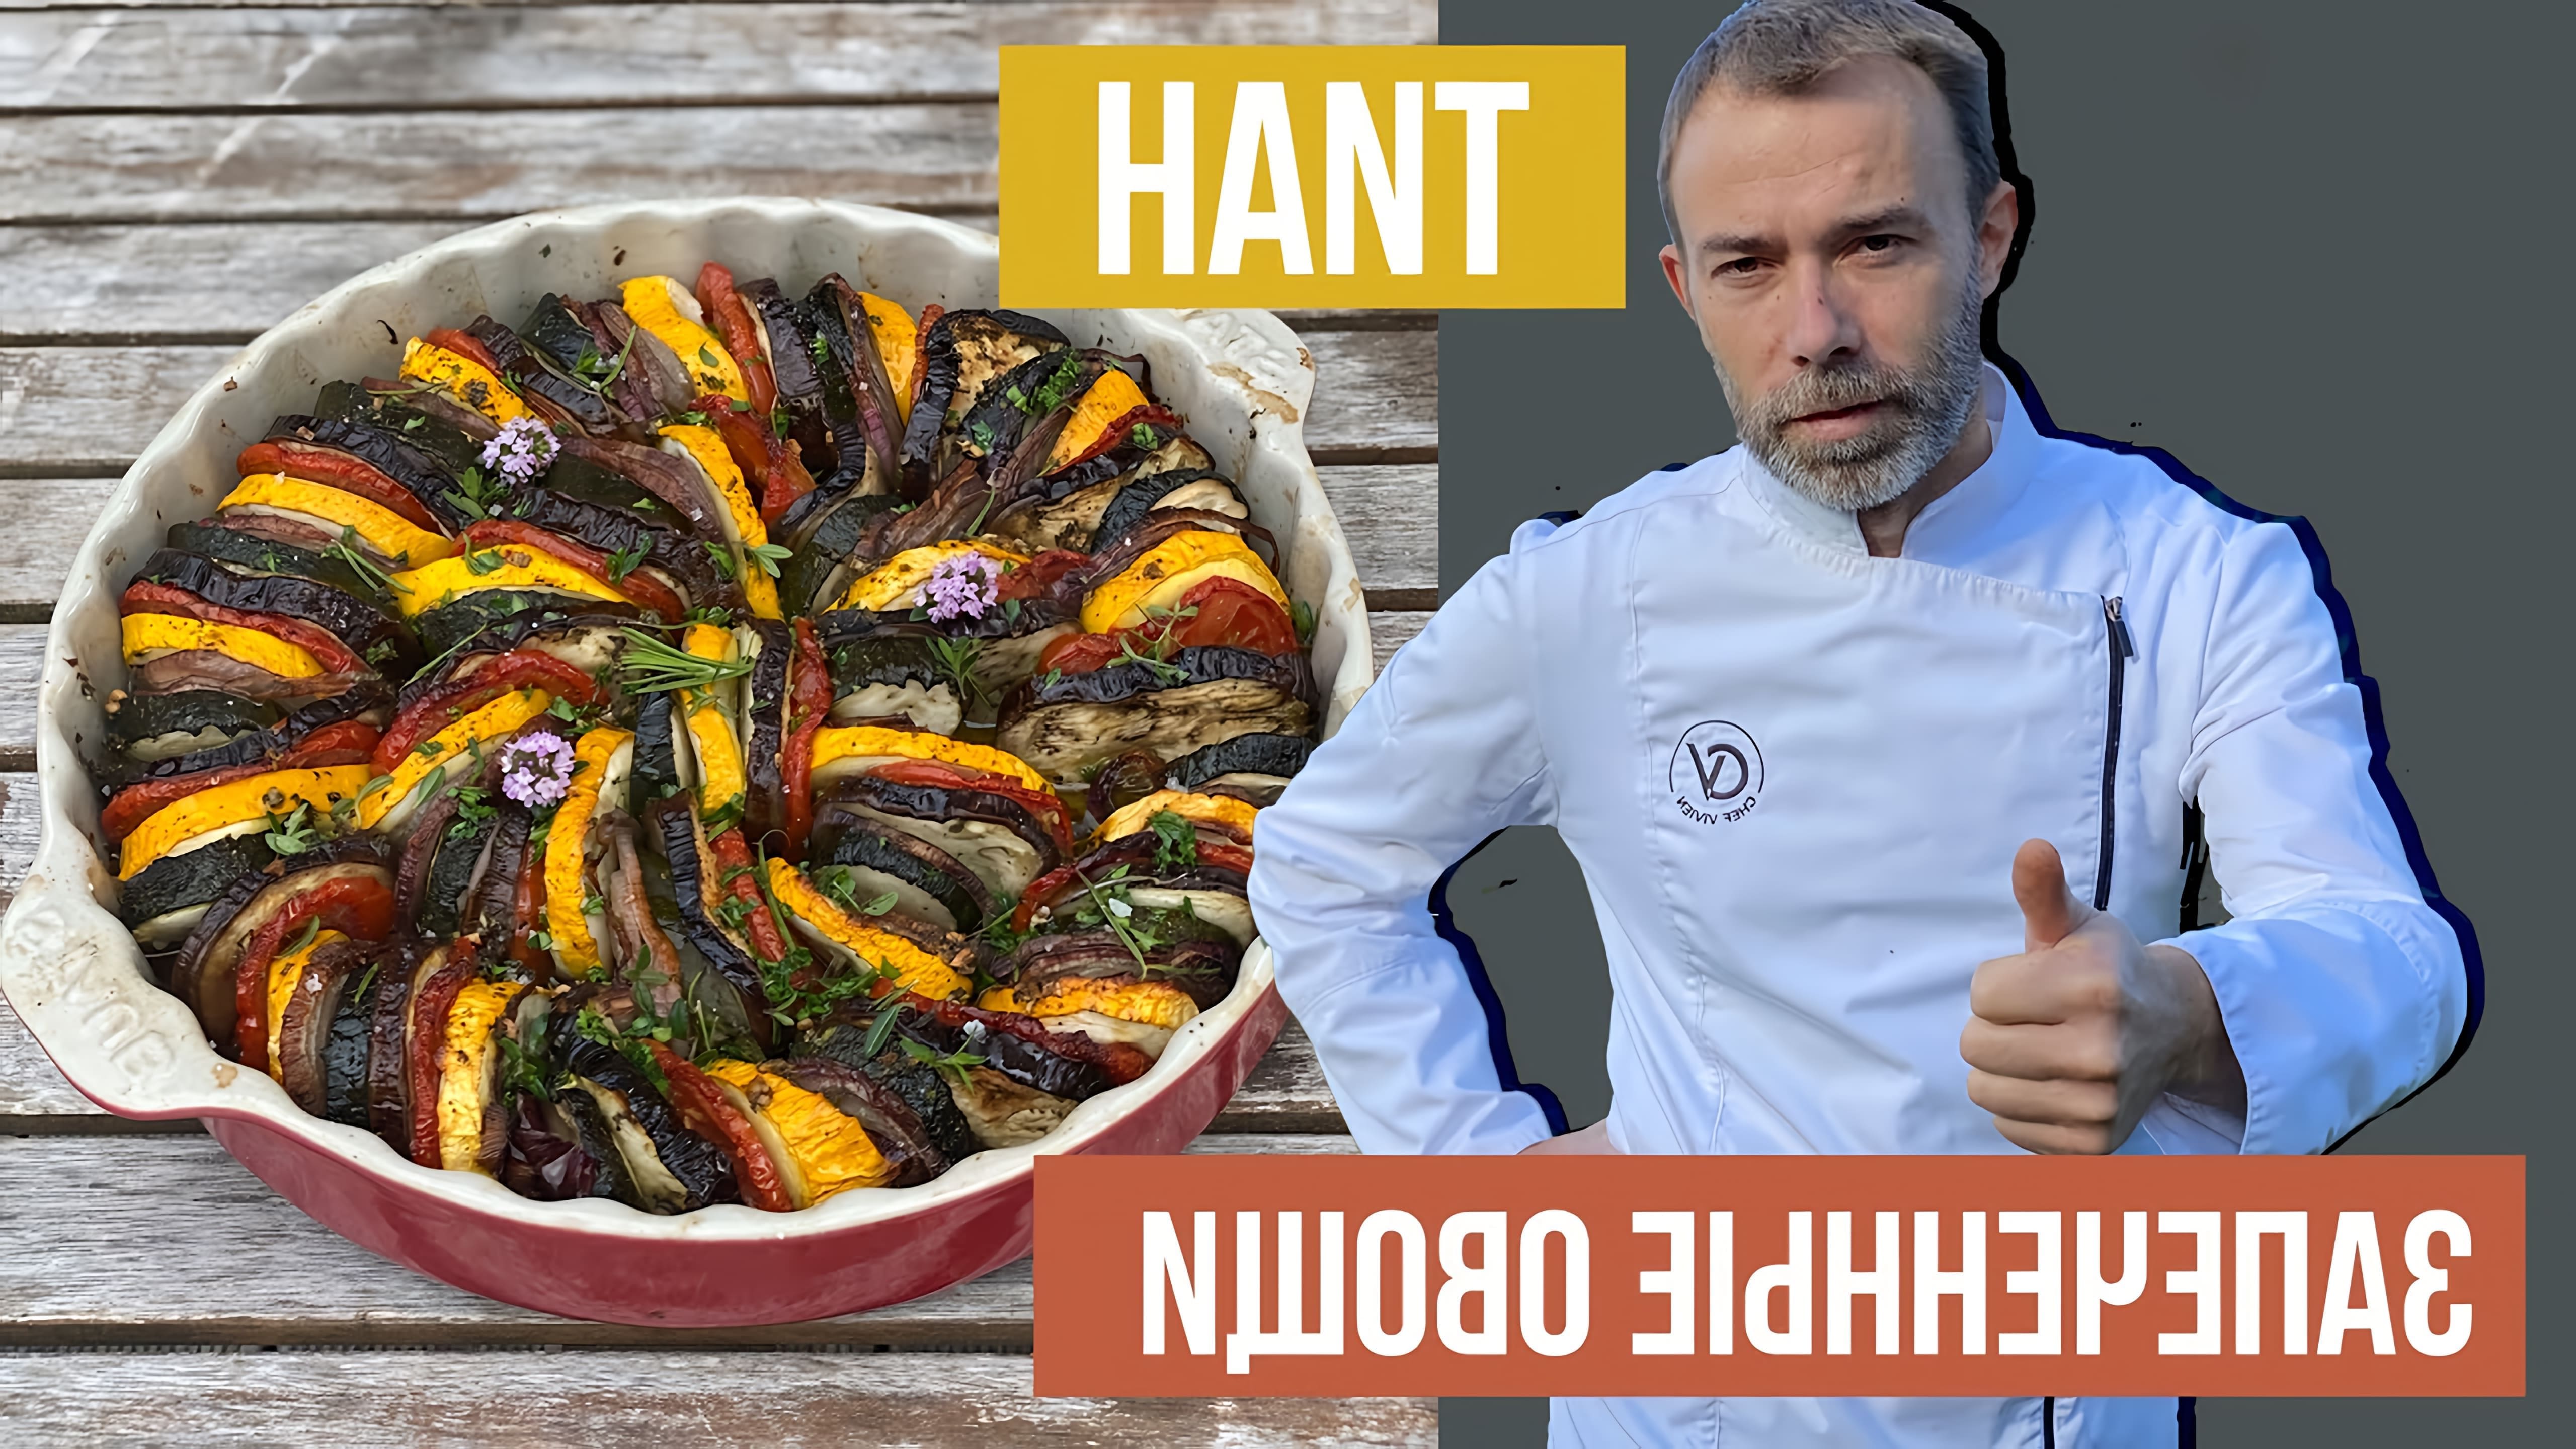 В этом видео демонстрируется процесс приготовления запеченных овощей в духовке по провансальскому рецепту